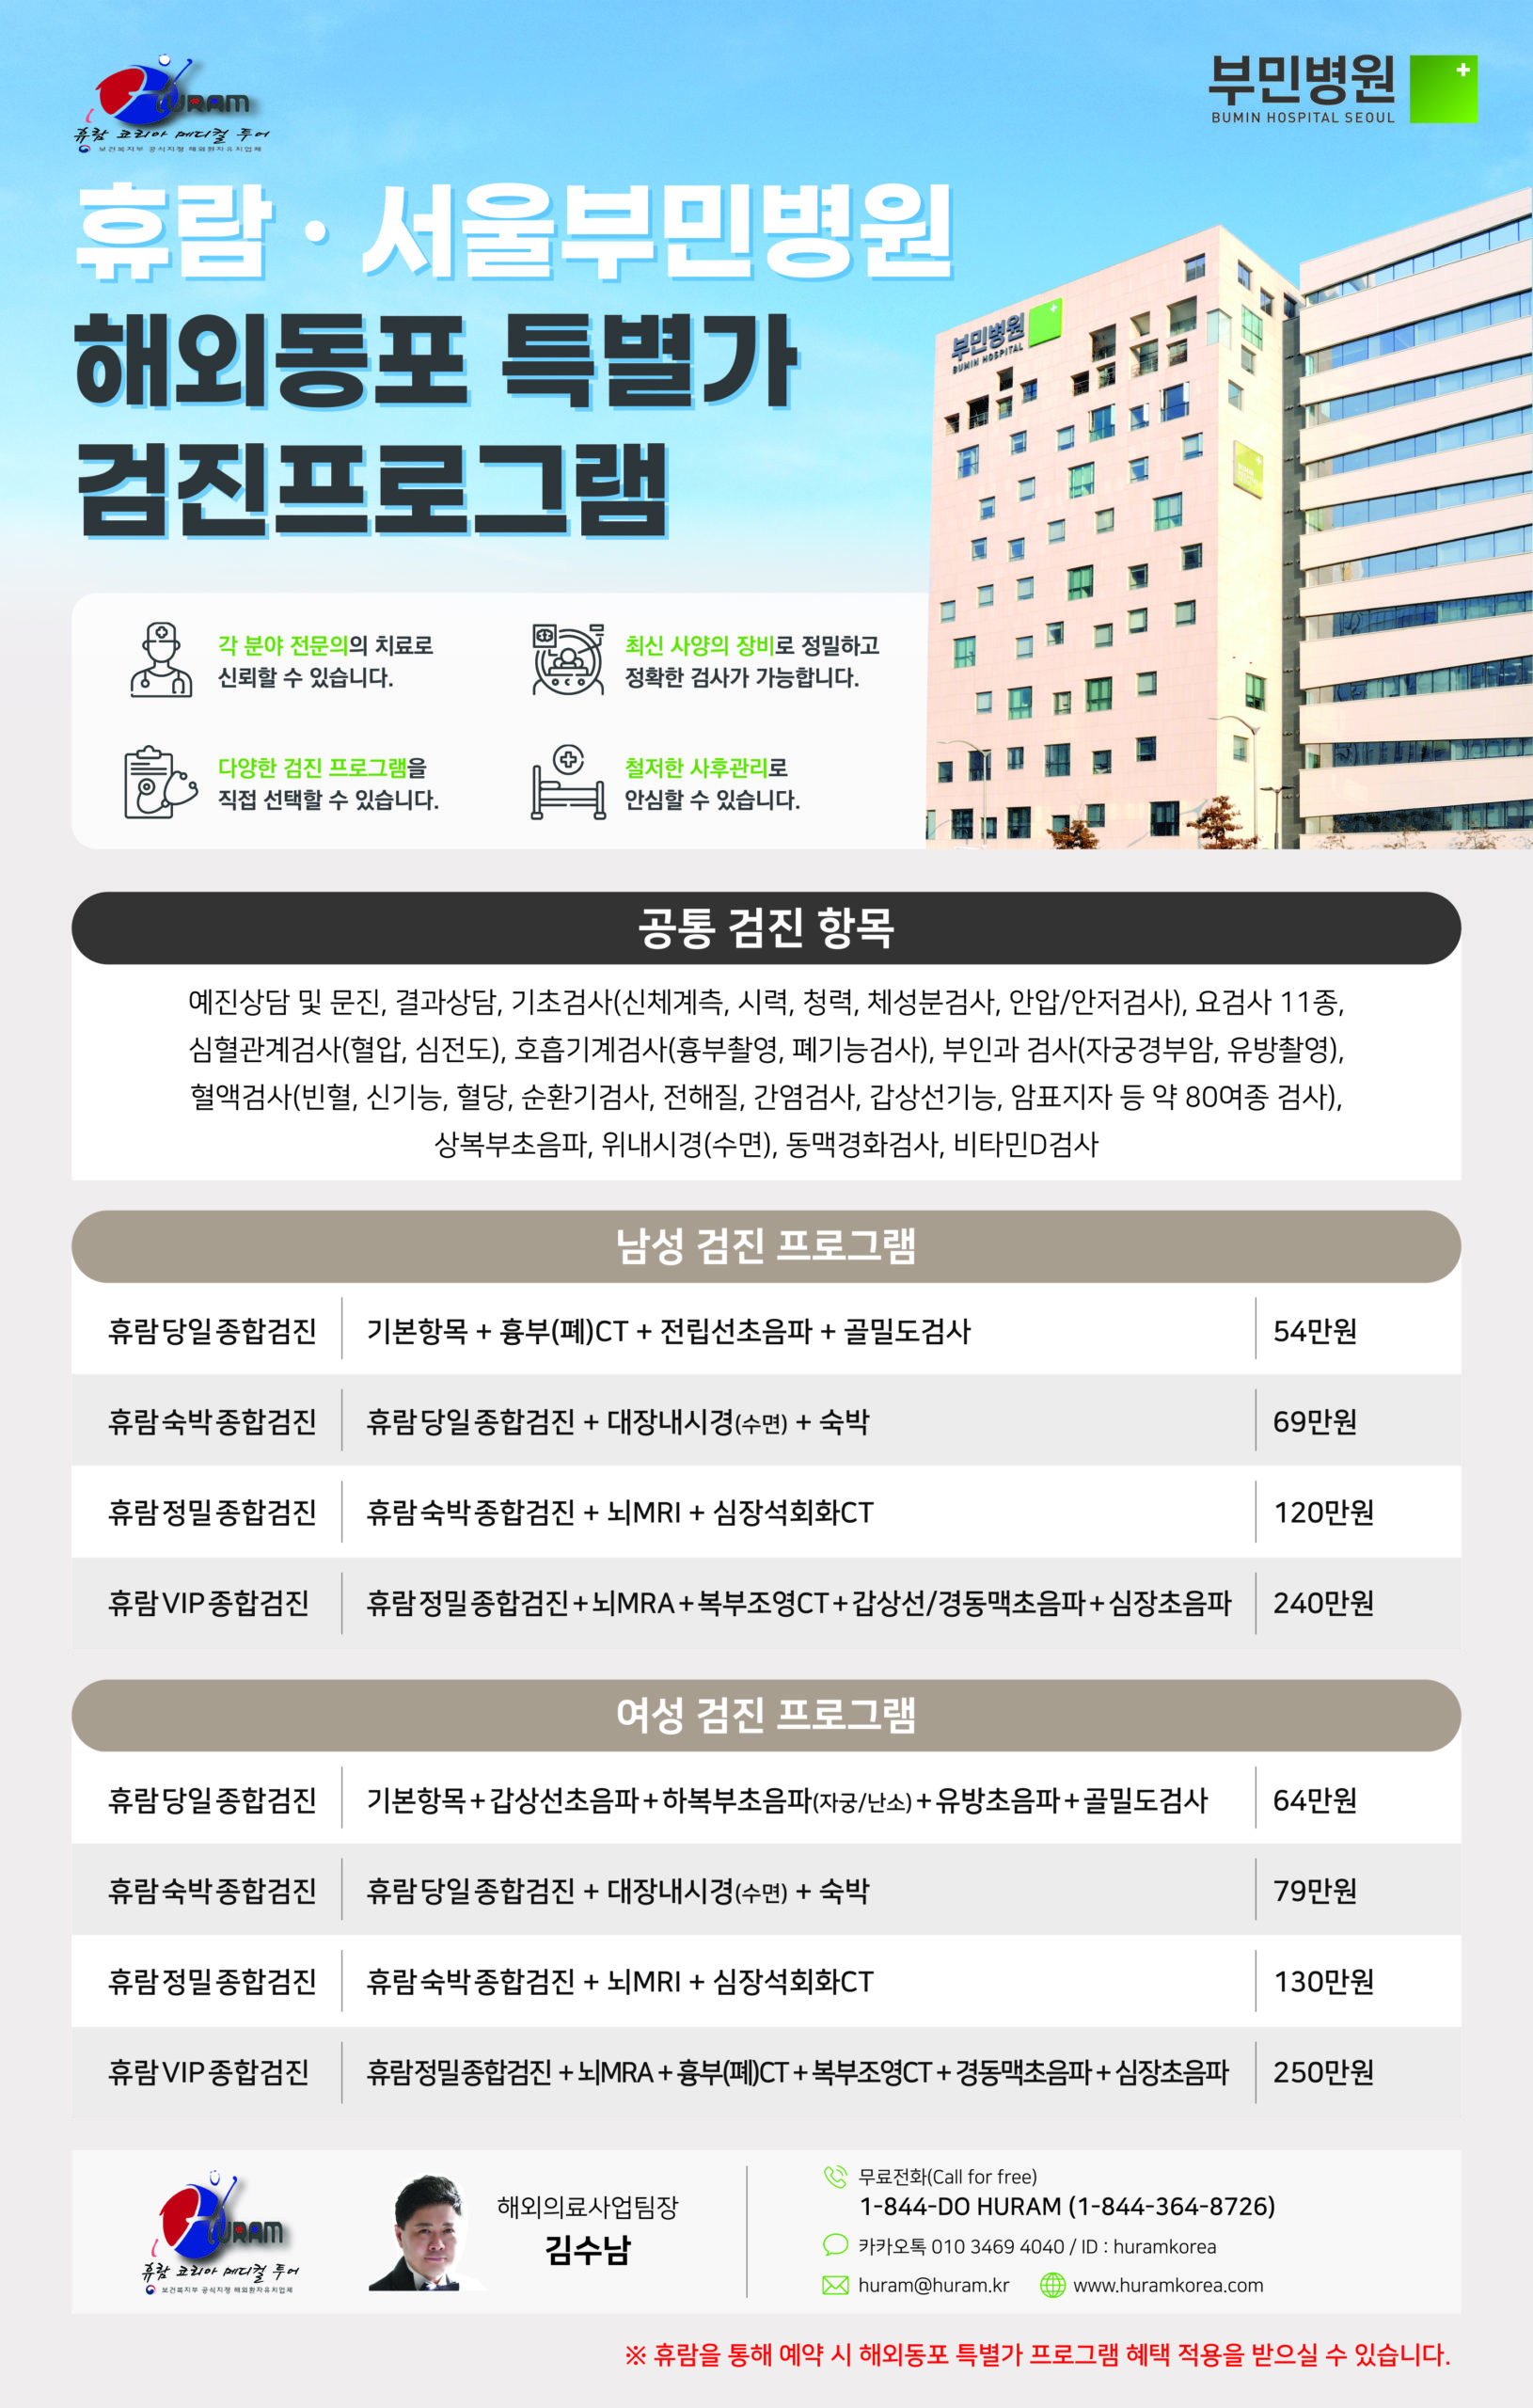 휴람-부민병원 해외동포특별가 프로그램